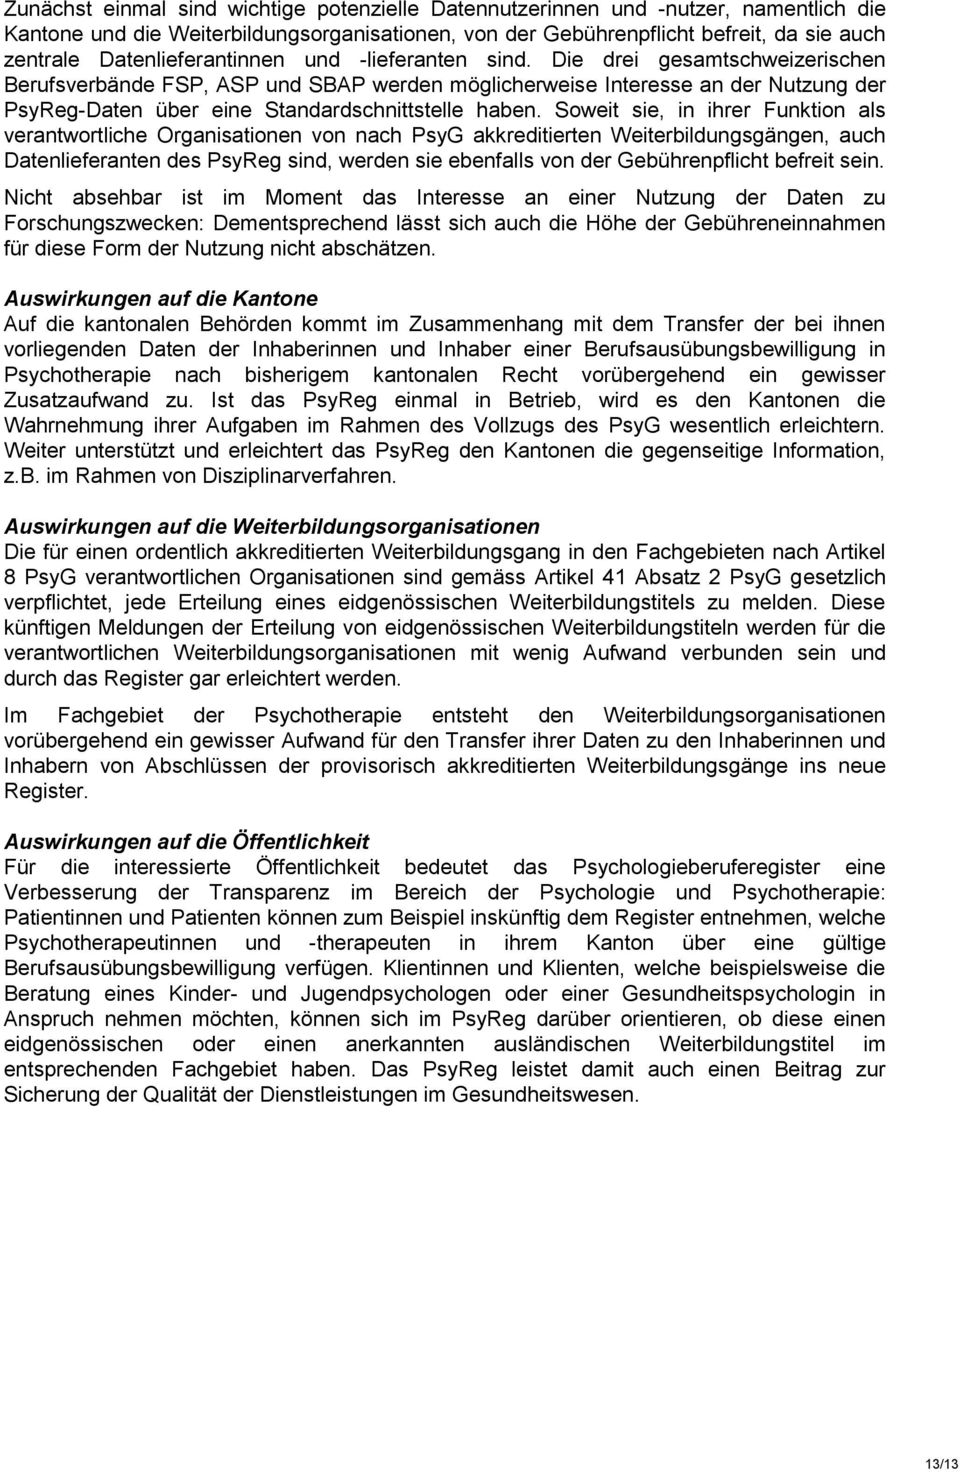 Die drei gesamtschweizerischen Berufsverbände FSP, ASP und SBAP werden möglicherweise Interesse an der Nutzung der PsyReg-Daten über eine Standardschnittstelle haben.